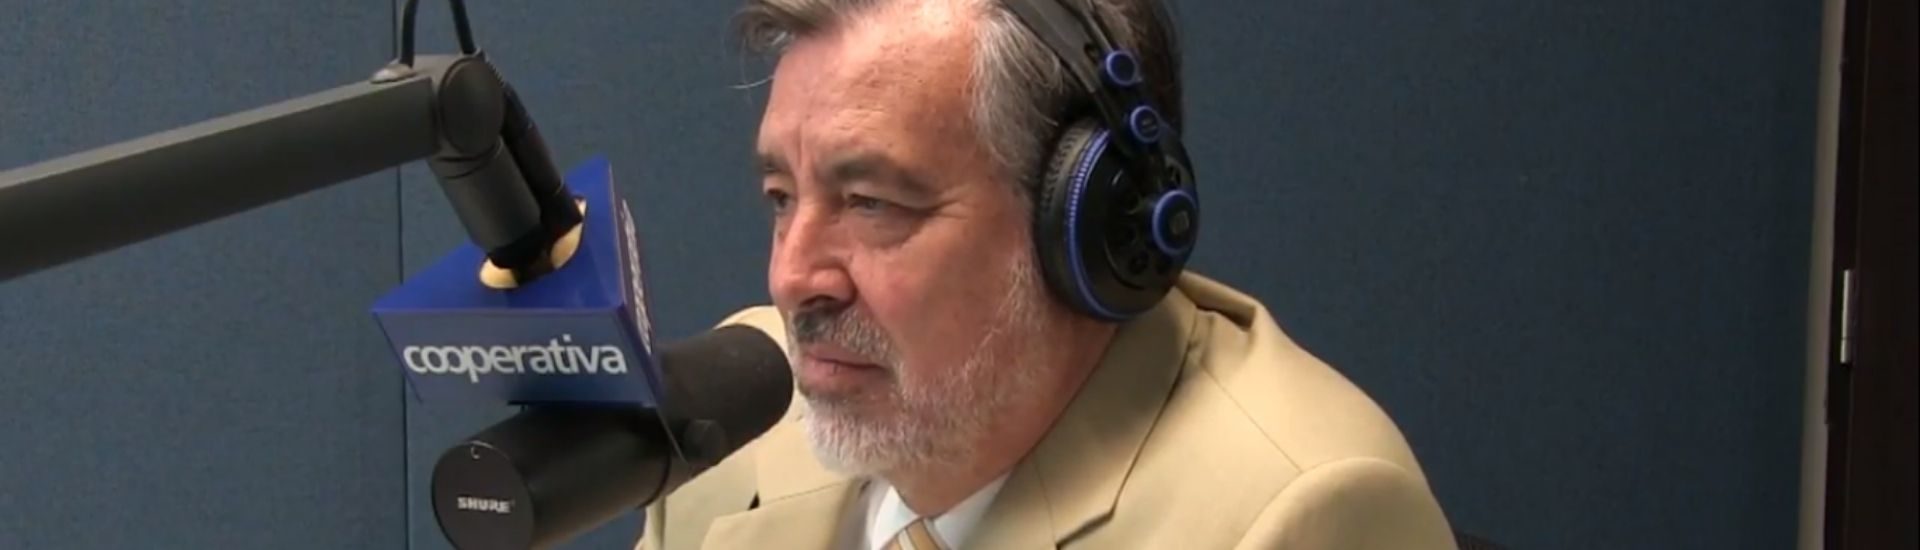 Alejandro Guillier en radio cooperativa